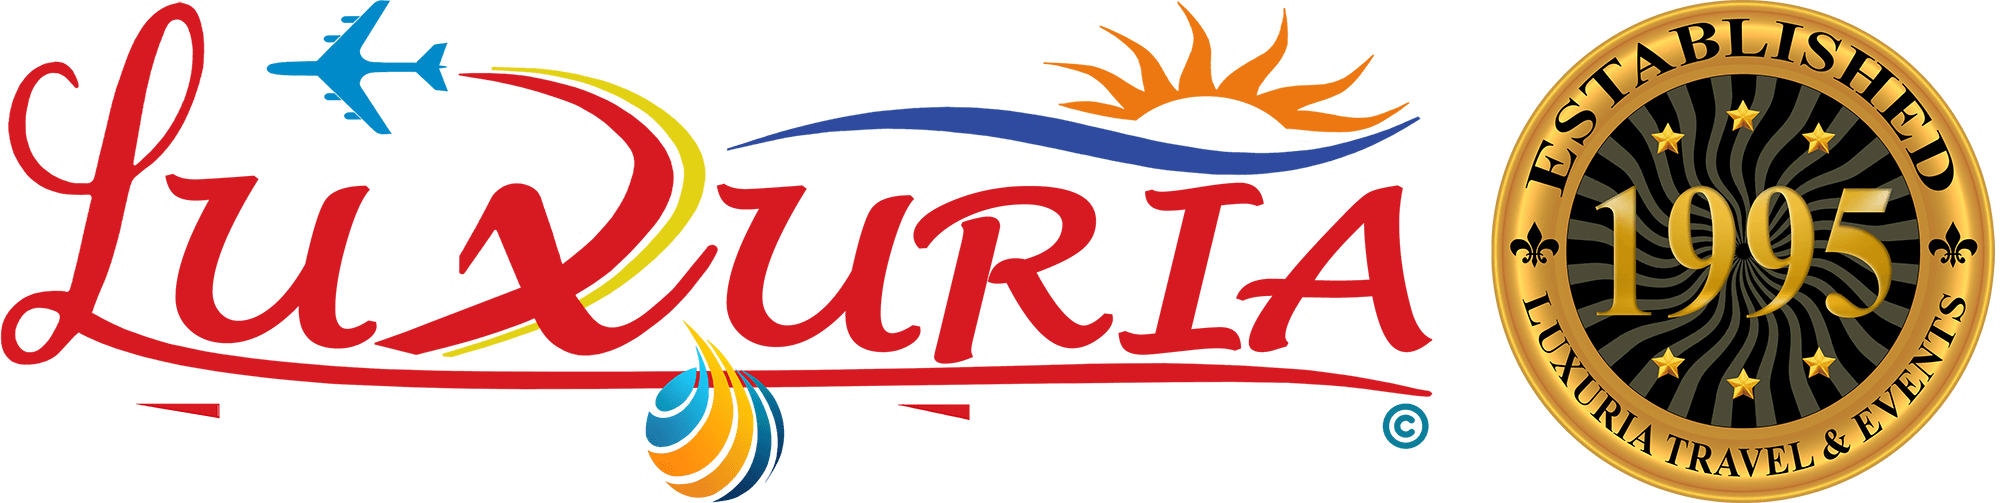 Luxuria Travel & Events | اقتصاد دبي ⋆ Luxuria Travel & Events